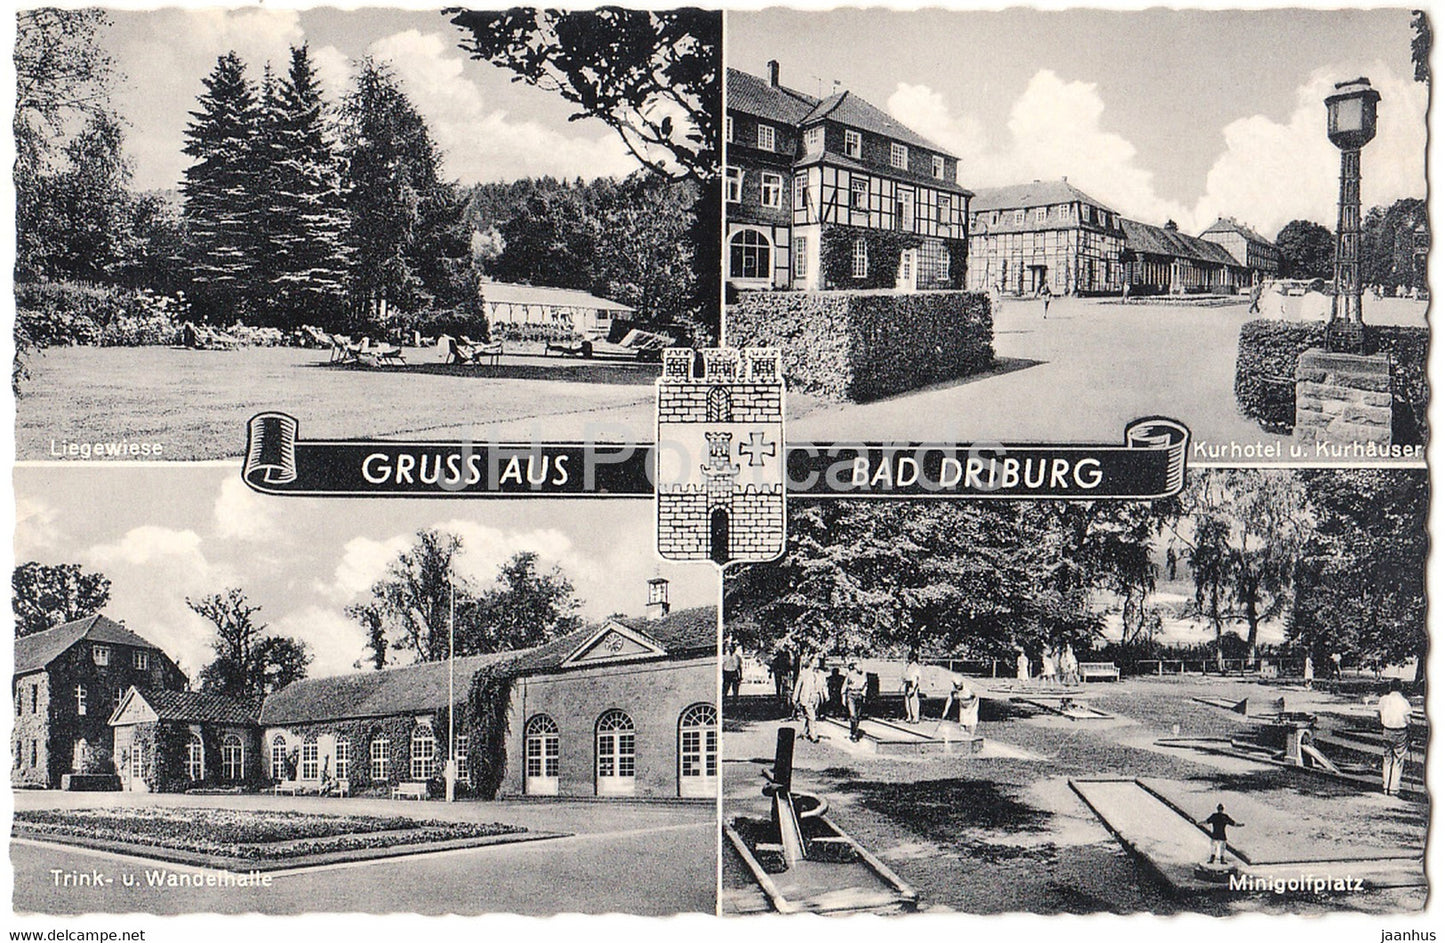 Gruss aus Bad Driburg - Liegewiese - Trink u Wandelhalle - Kurhotel Kurhauser - Minigolfplatz - golf - Germany - unused - JH Postcards